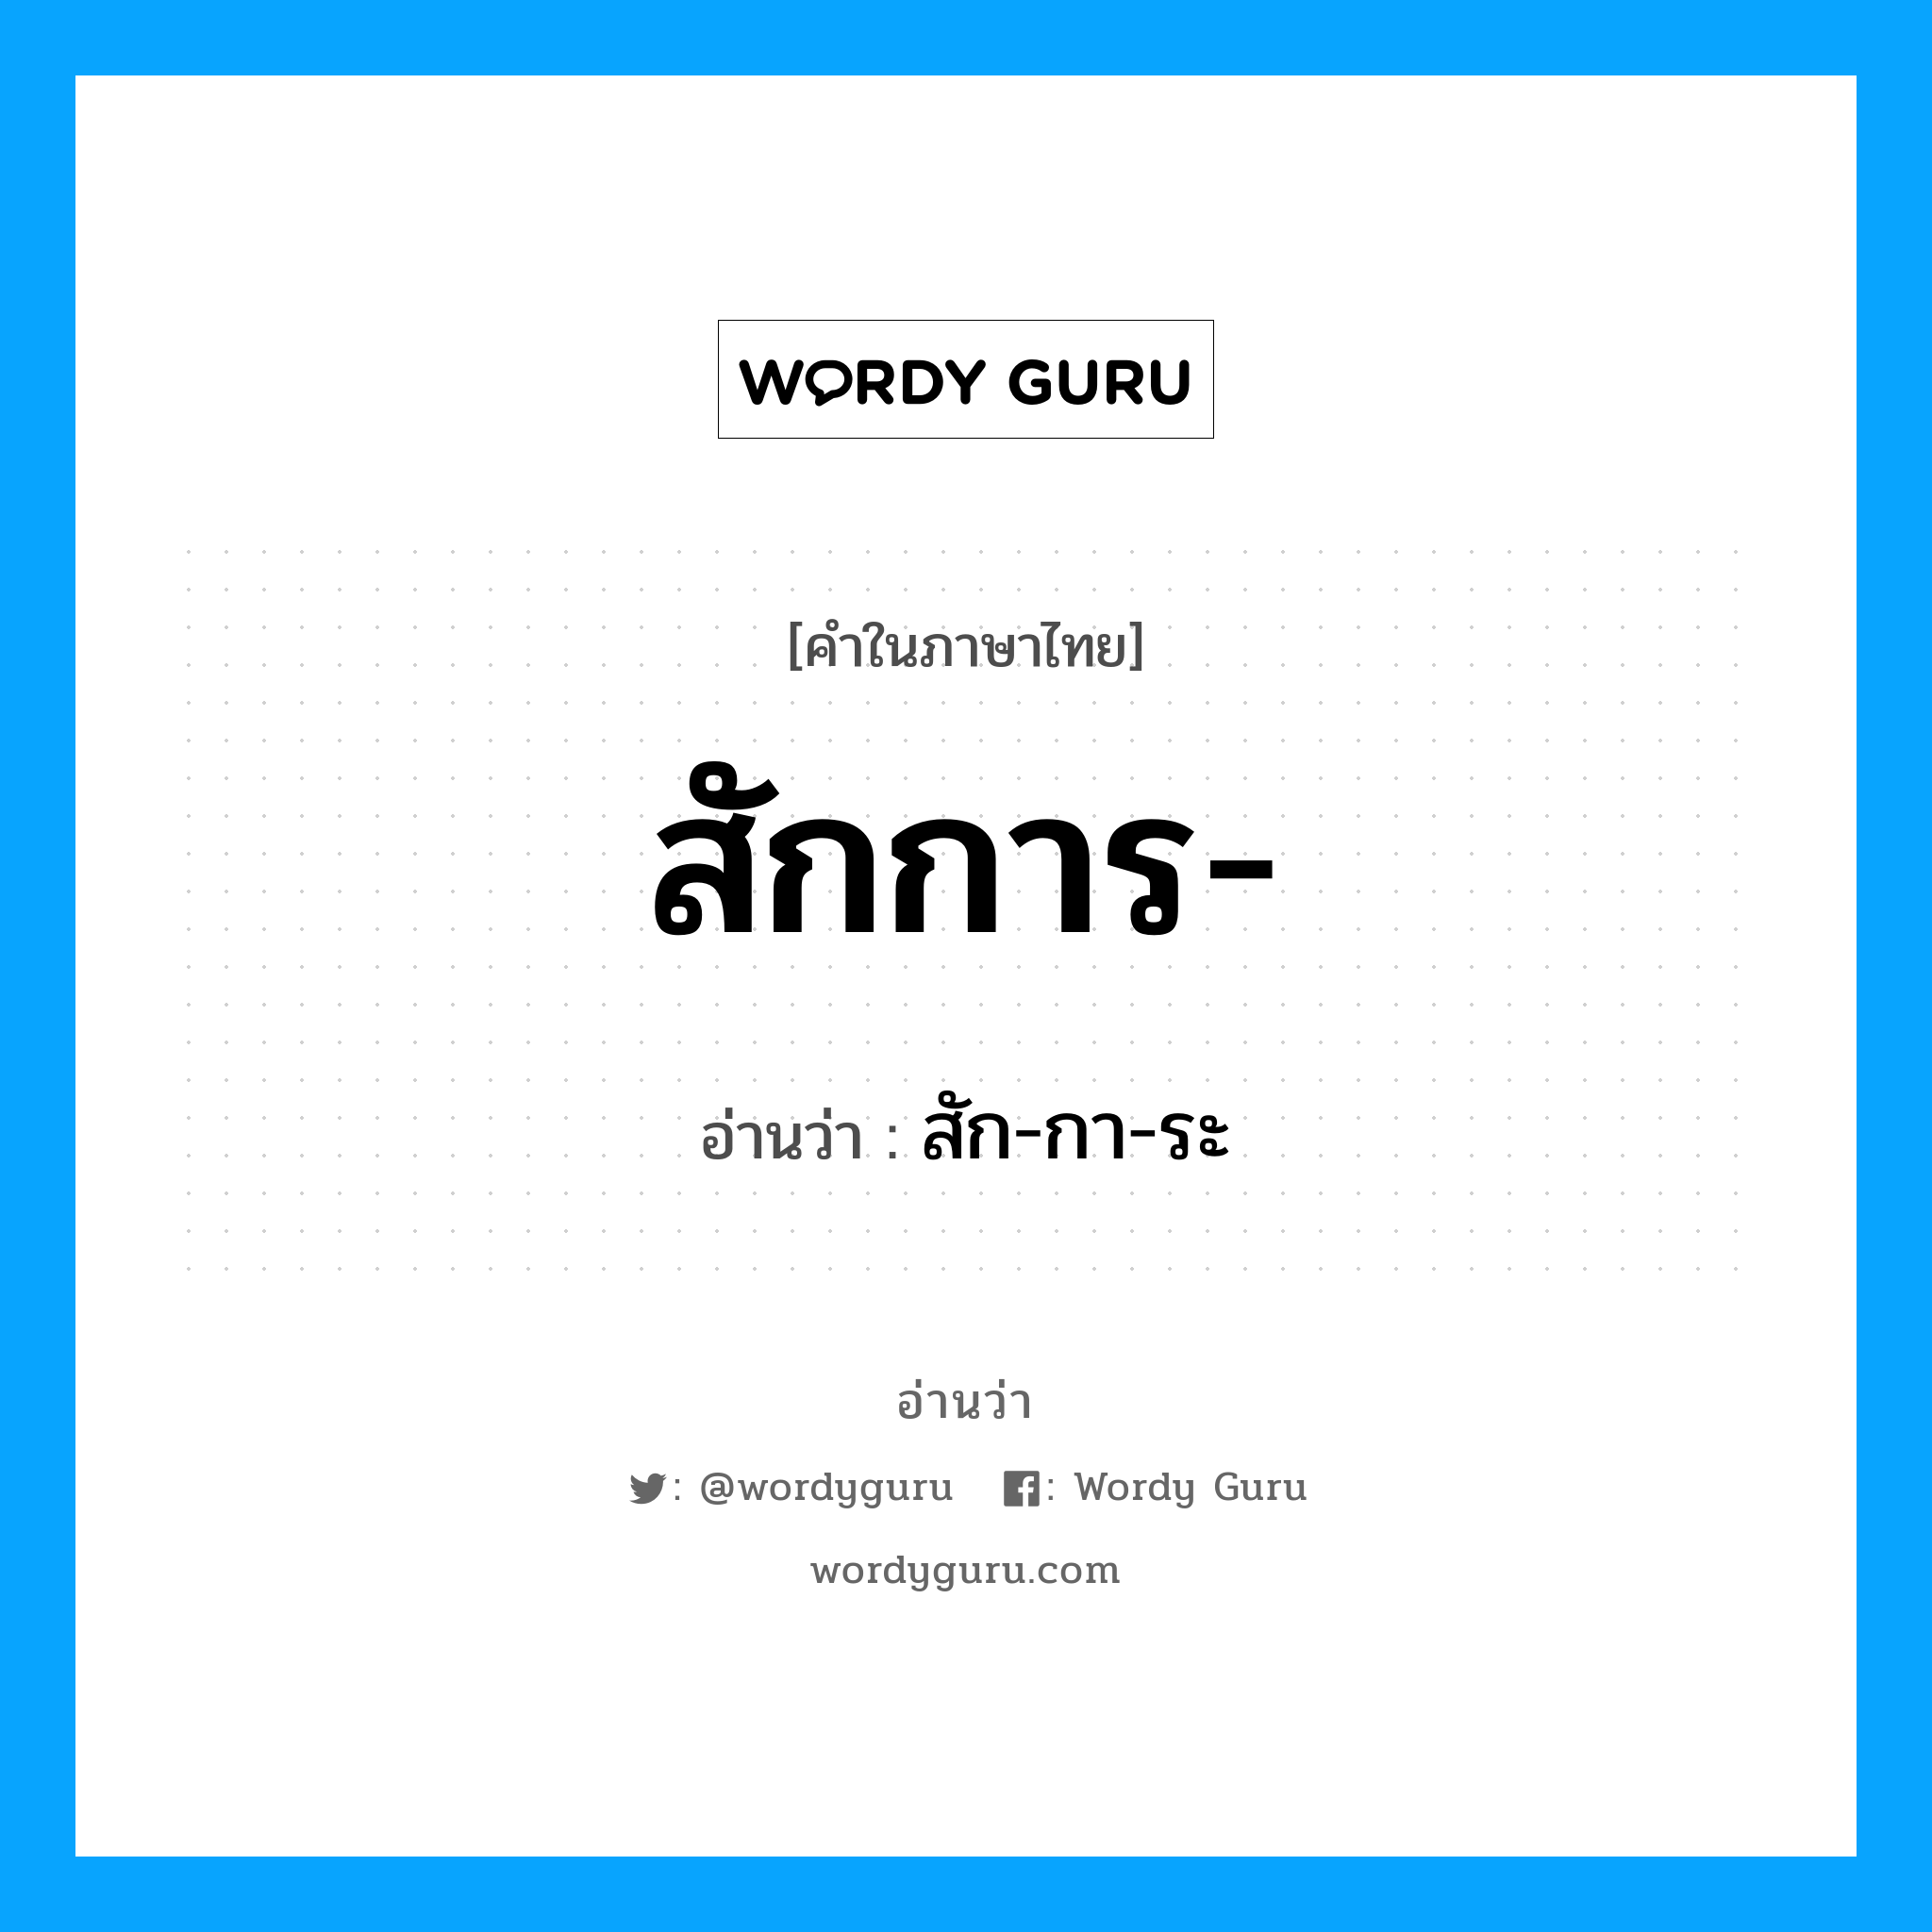 สัก-กา-ระ เป็นคำอ่านของคำไหน?, คำในภาษาไทย สัก-กา-ระ อ่านว่า สักการ-